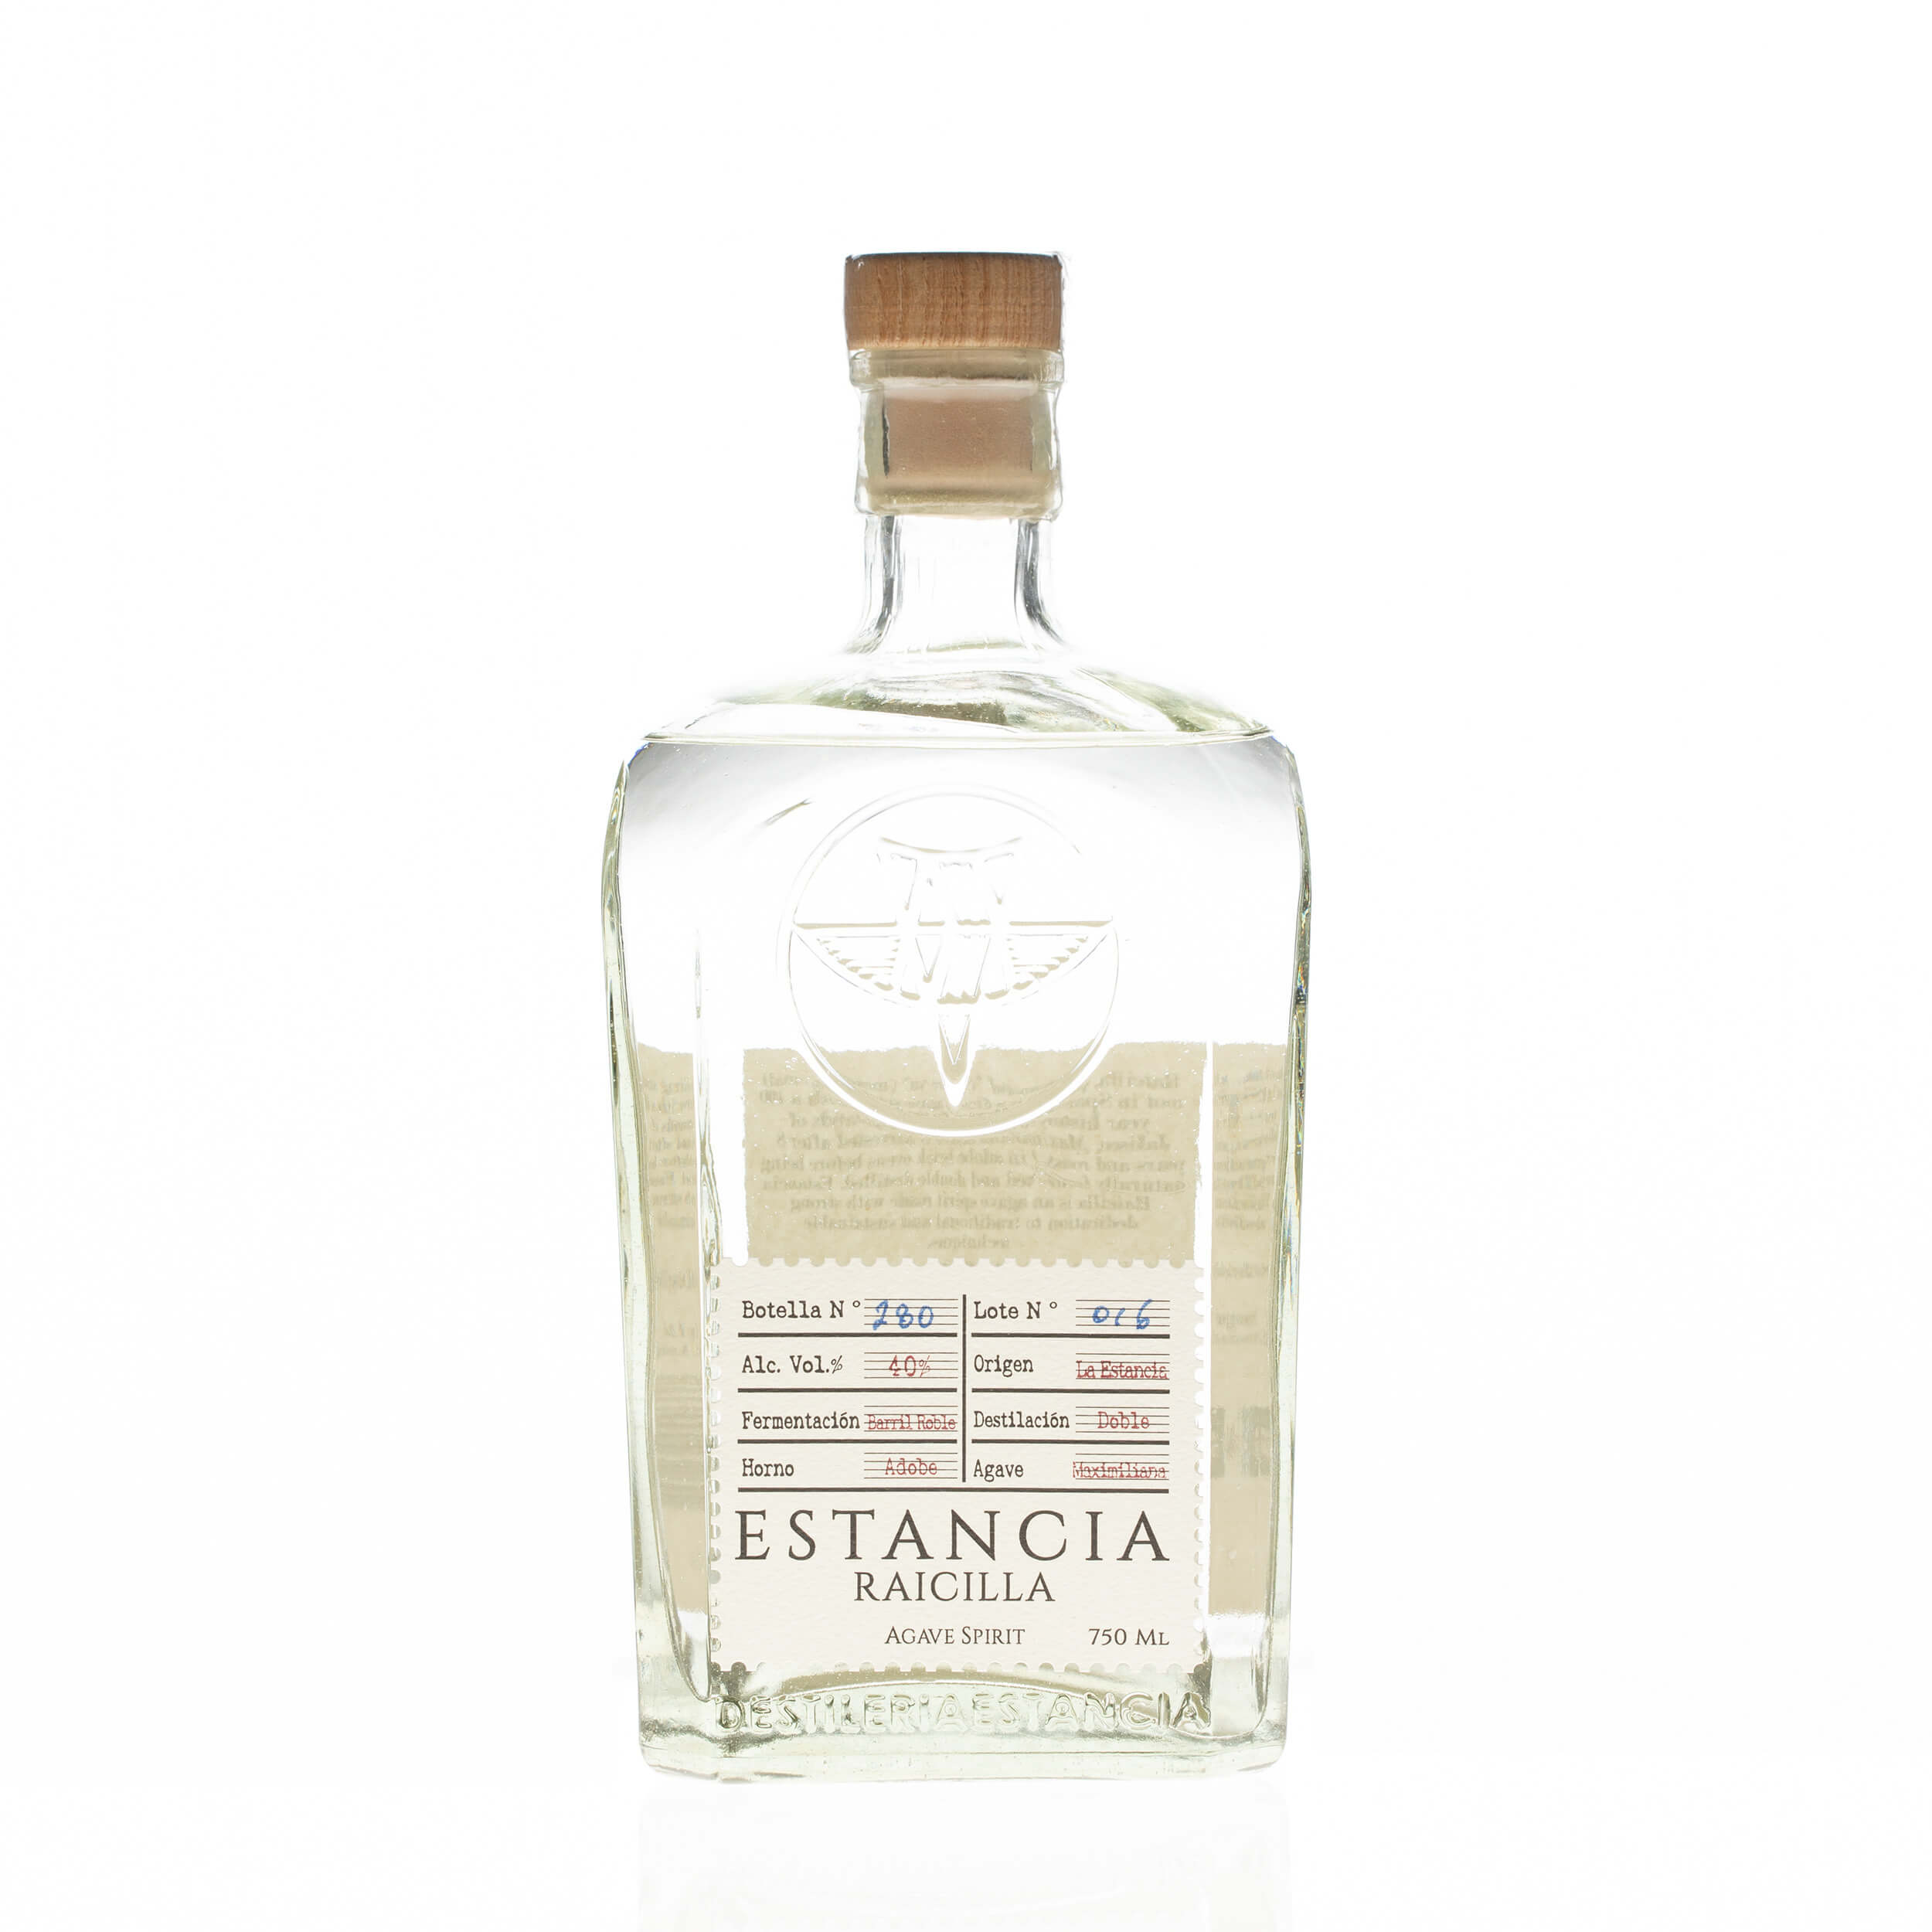 Product image for “Estancia Raicilla 40%”